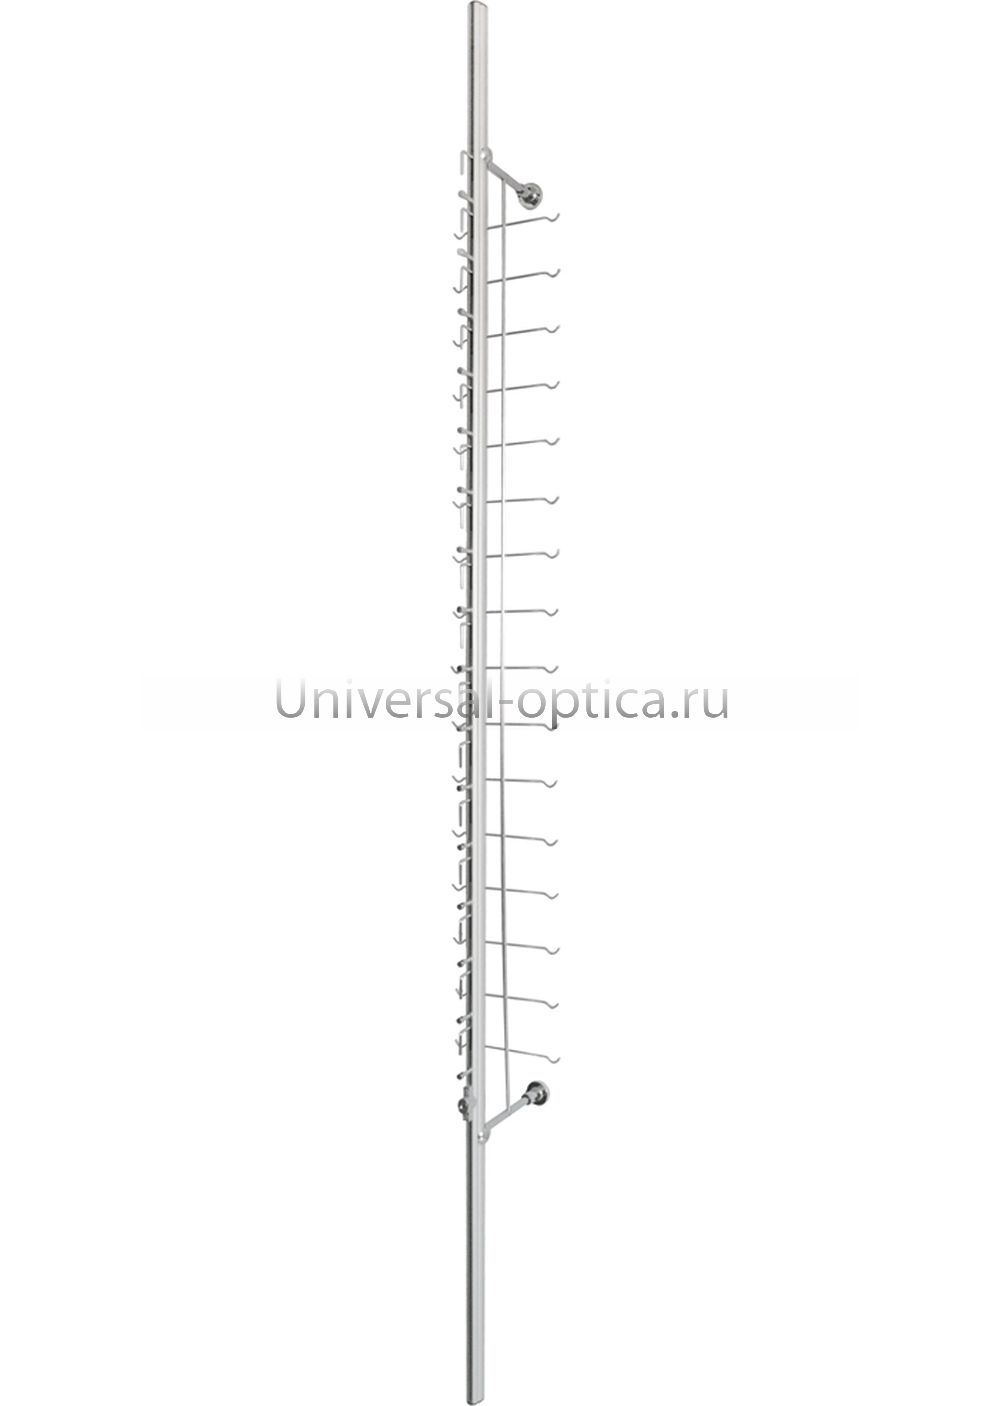 Настенный модуль M-1  от Торгового дома Универсал || universal-optica.ru